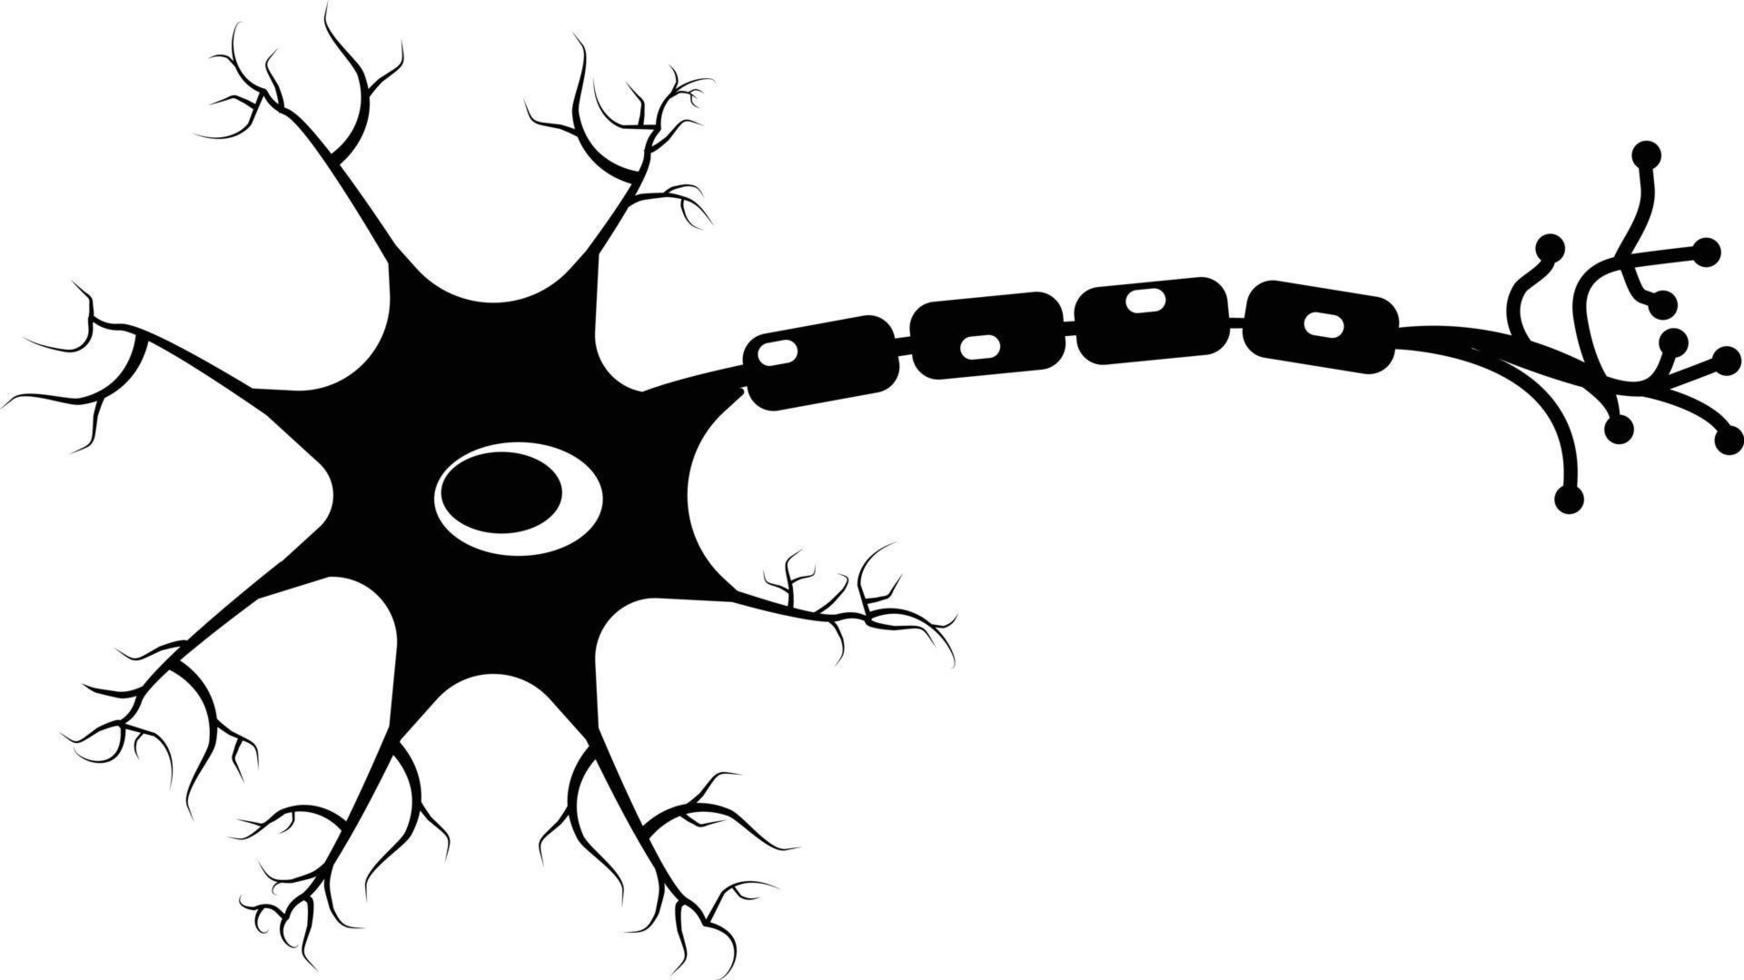 Neuron-Symbol auf weißem Hintergrund. Zeichen menschlicher Neuronenzellen. Symbol für Gehirnneuronen. flacher Stil. vektor